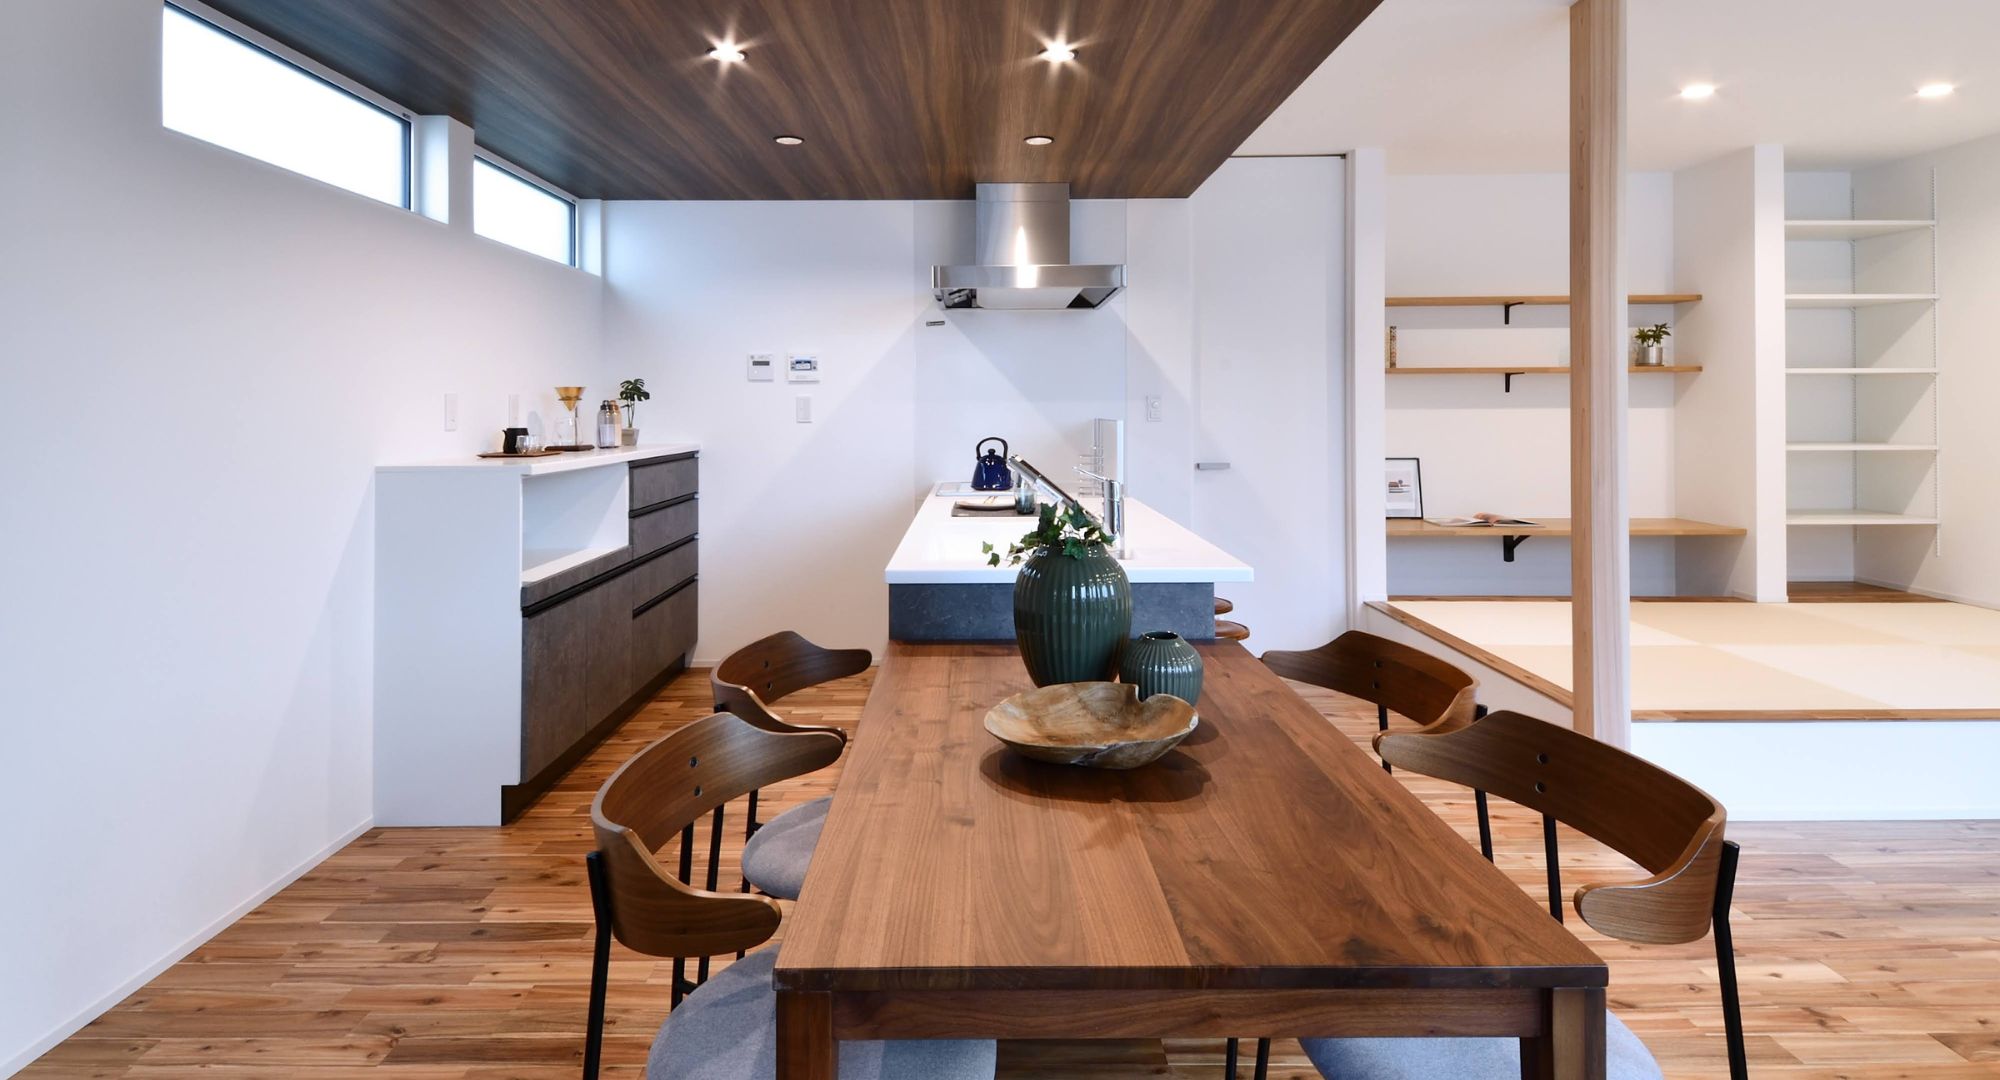 カフェをイメージしたデザインとくつろぎの空間設計の平屋